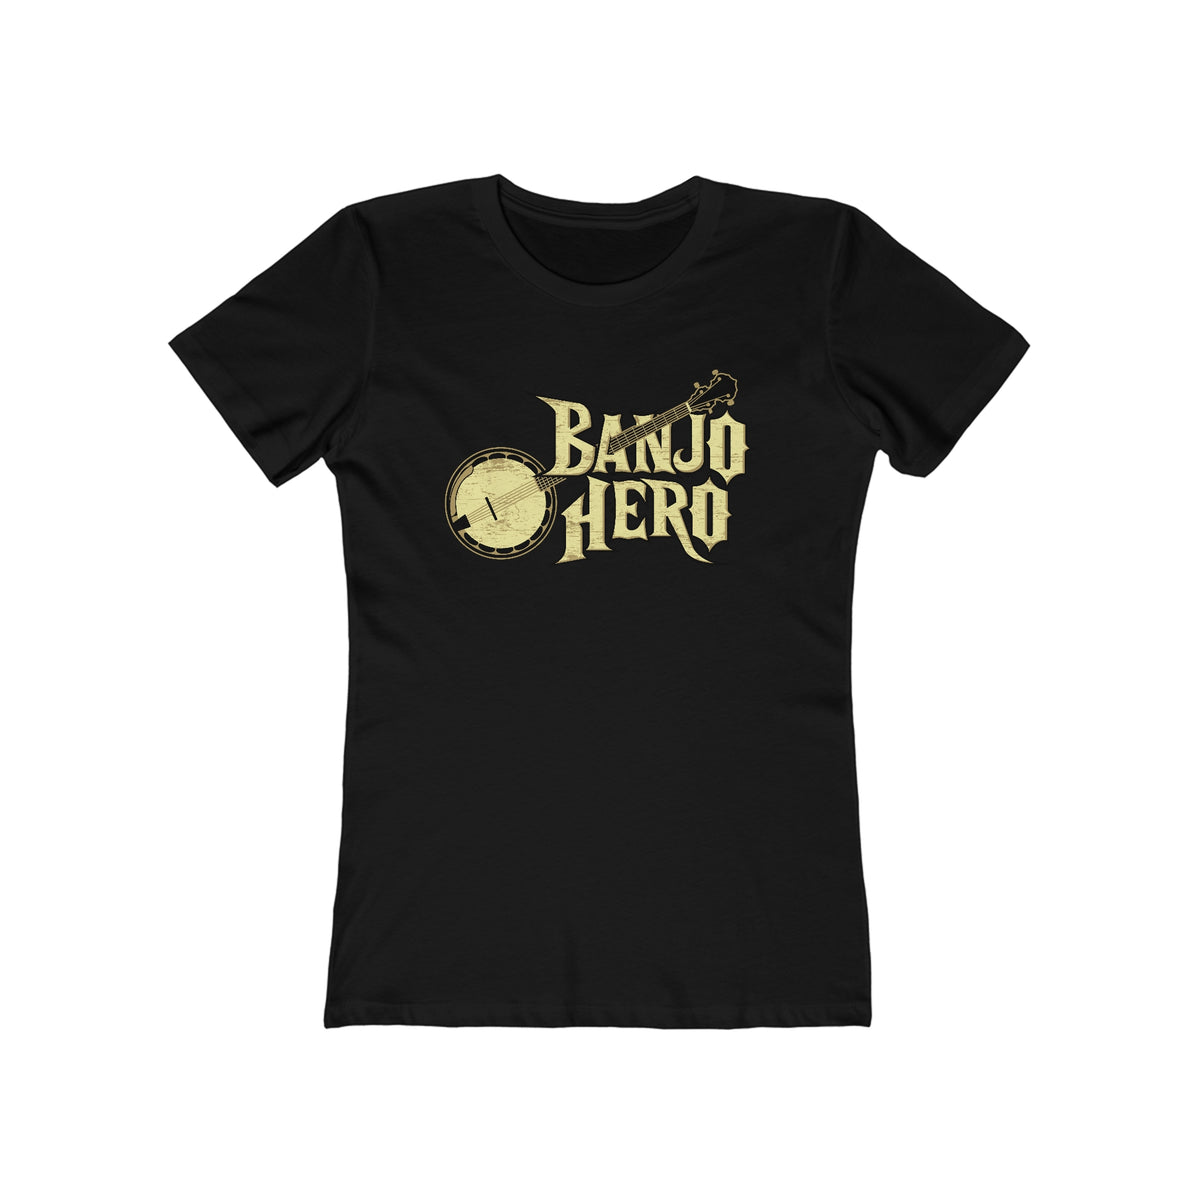 Banjo Hero - Women’s T-Shirt